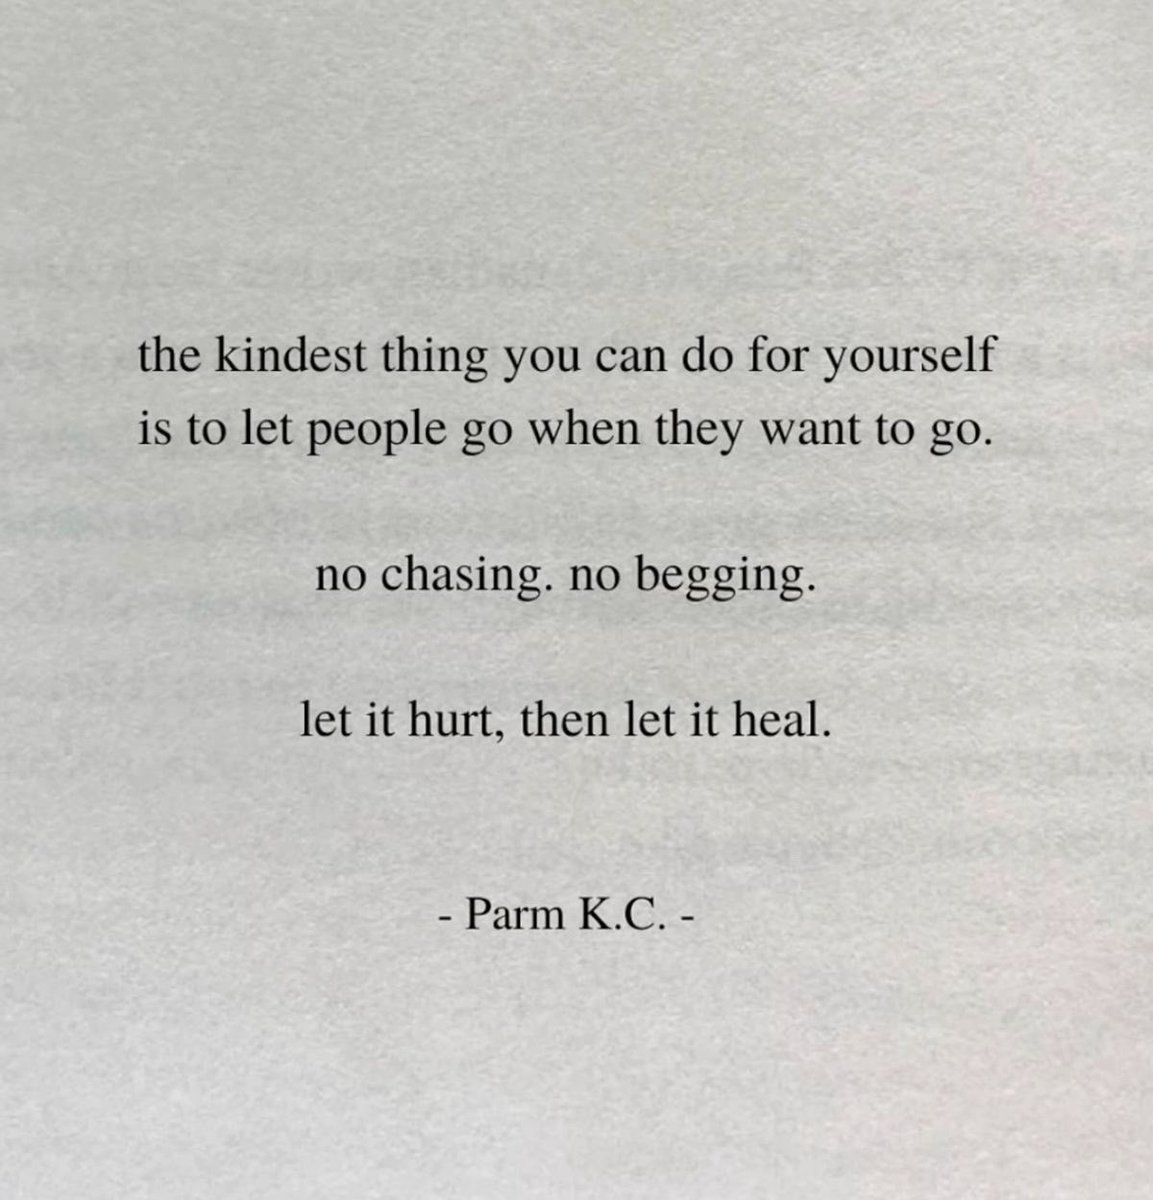 Let it hurt, then let it heal.